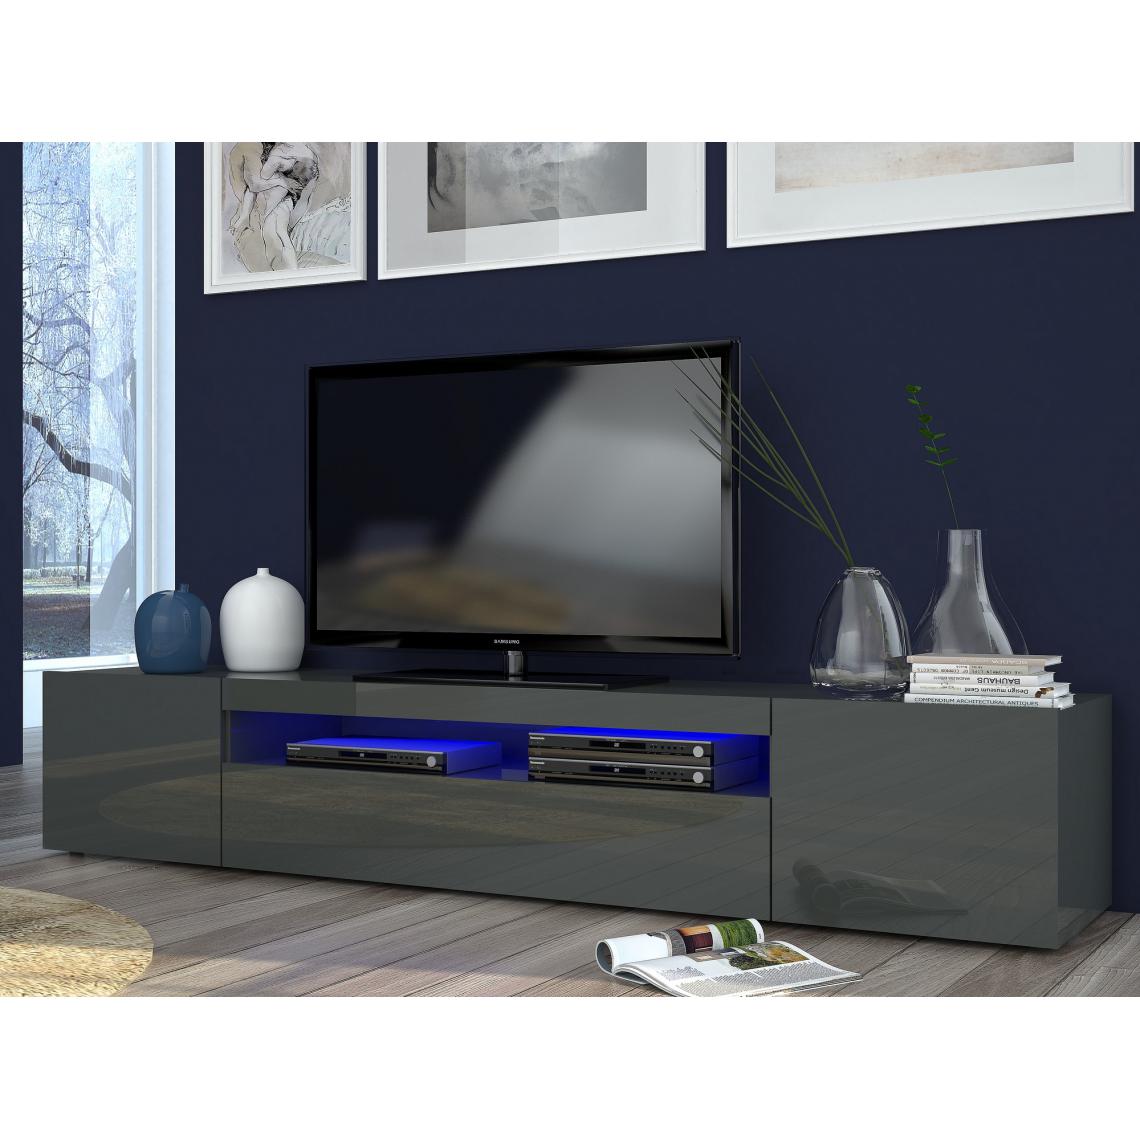 Alter - Meuble TV de salon, Made in Italy, Meuble TV avec 3 portes et étagères, cm 200x40h37, couleur anthracite brillant, avec lumière LED bleue - Meubles TV, Hi-Fi